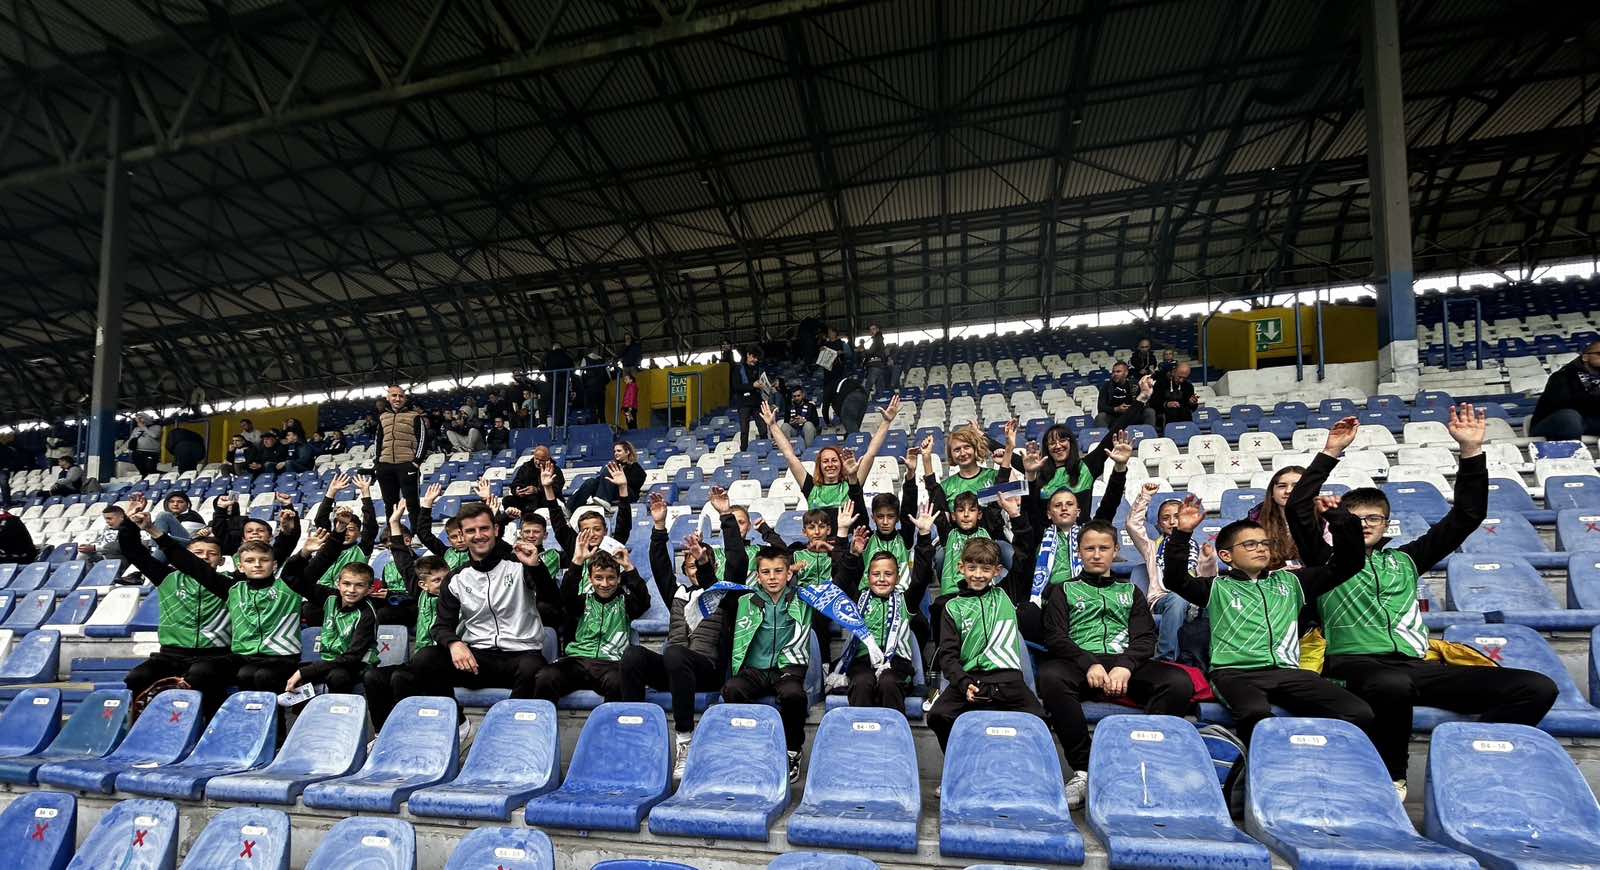 Najmlađi članovi NK Vareš će prisustvovati utakmici između Željezničara i Tuzla Cityja